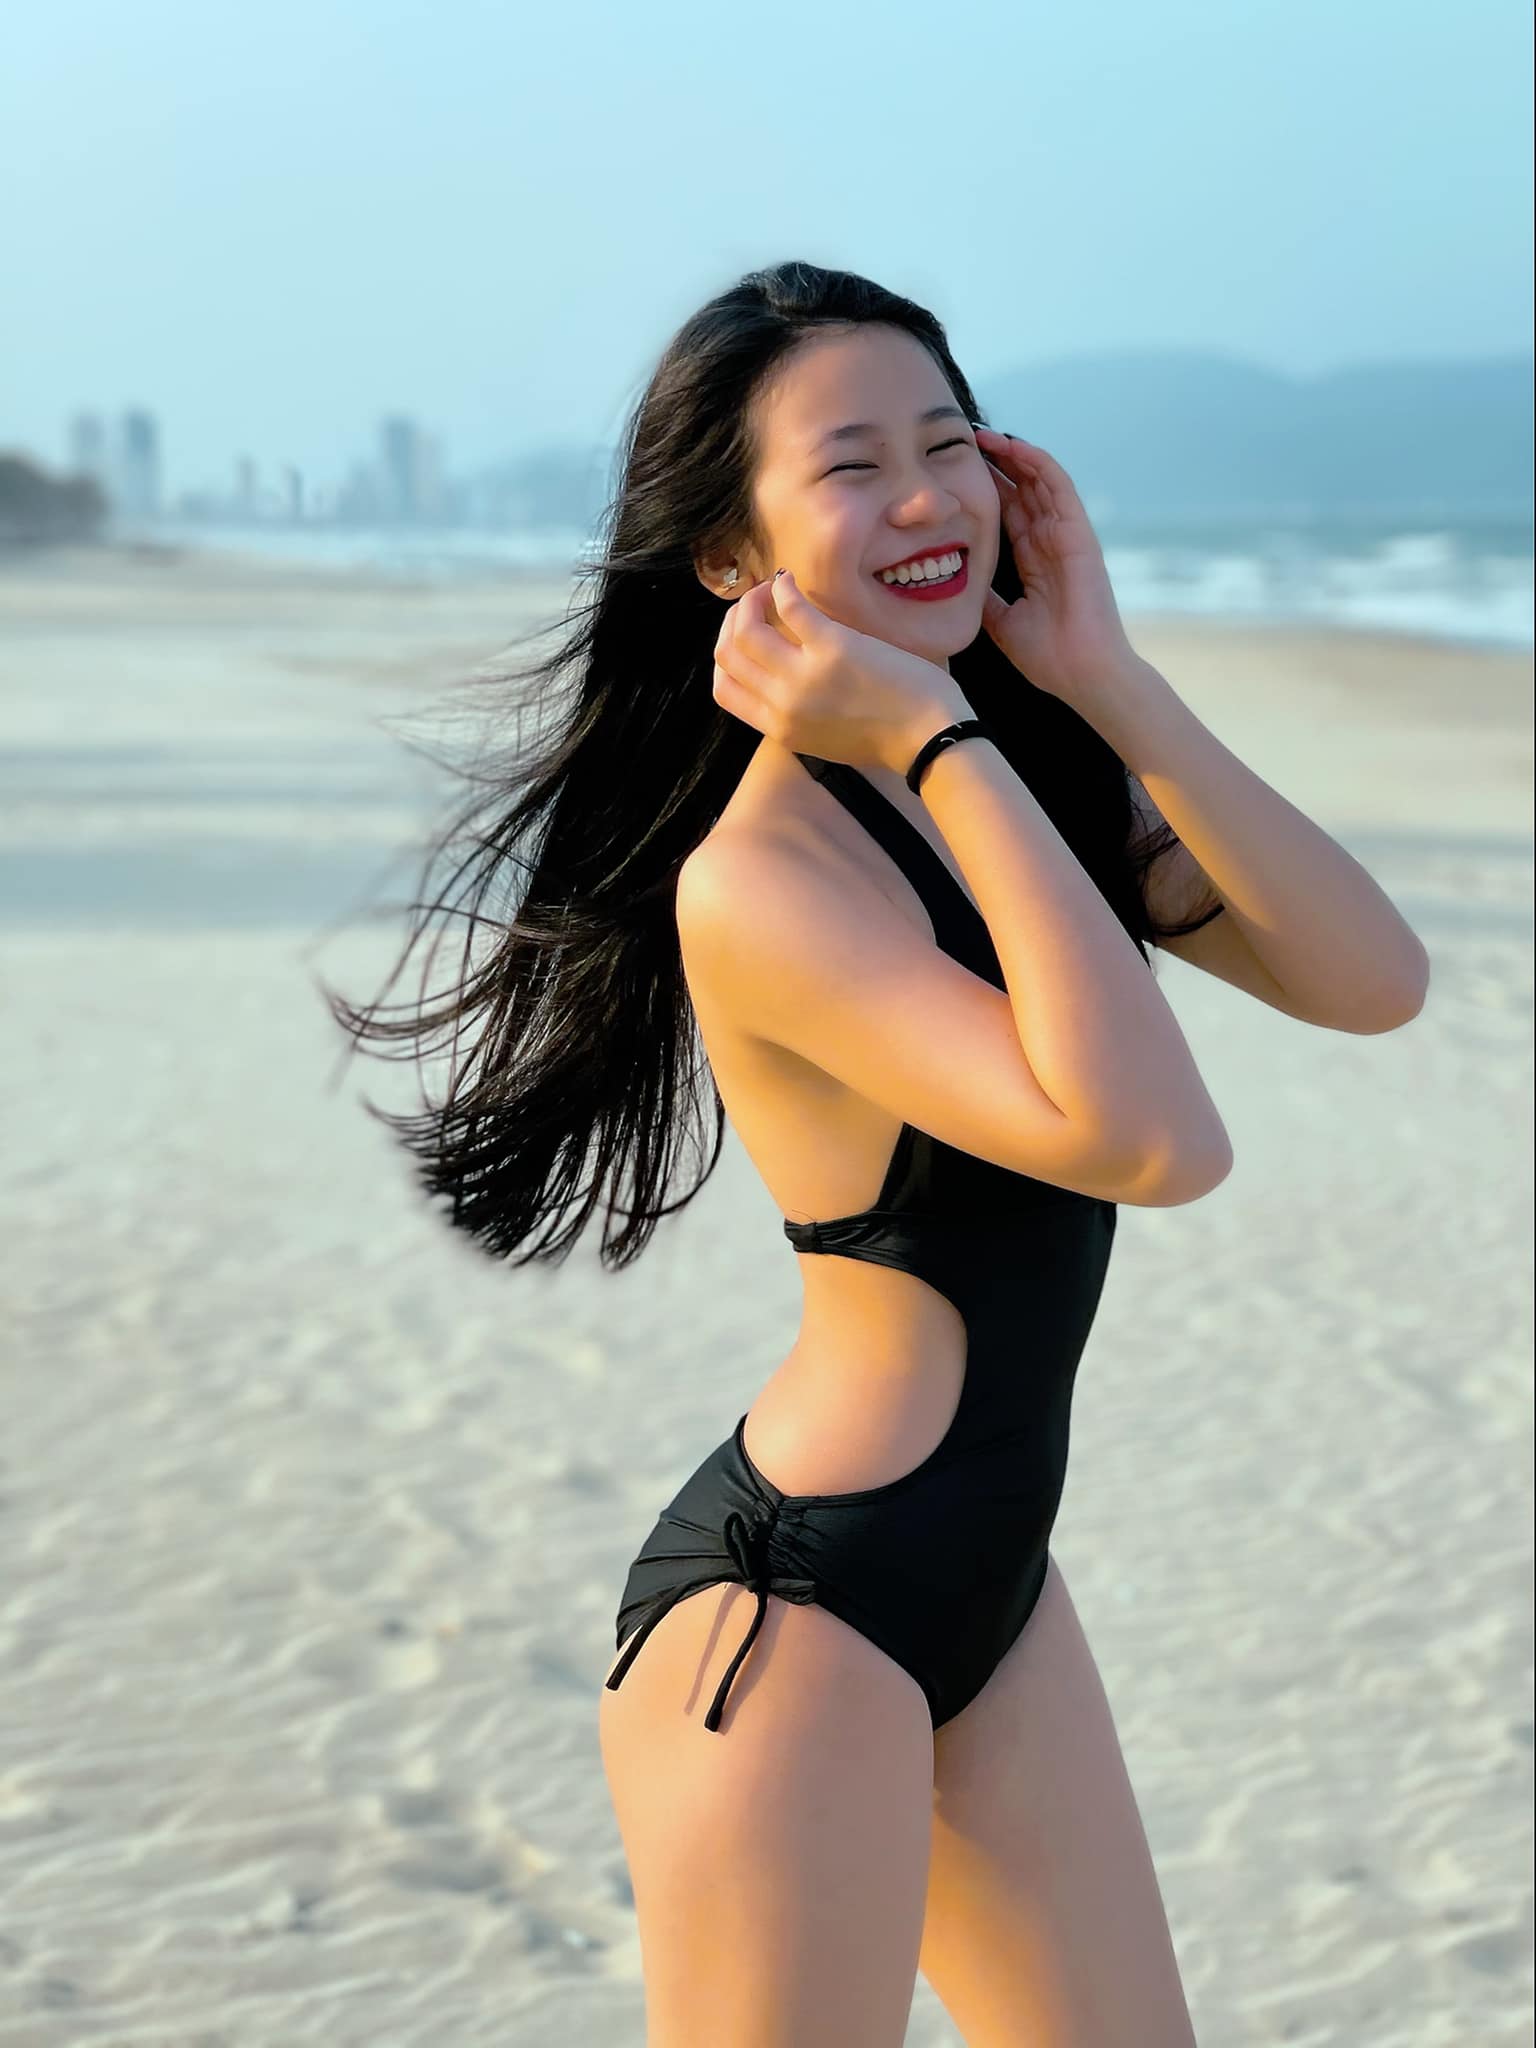 Con gái 18 tuổi của Lưu Thiên Hương: Dạn dĩ khoe body, nhan sắc đủ cạnh tranh danh xưng Hoa hậu tương lai với ái nữ nhà Quyền Linh - Ảnh 4.